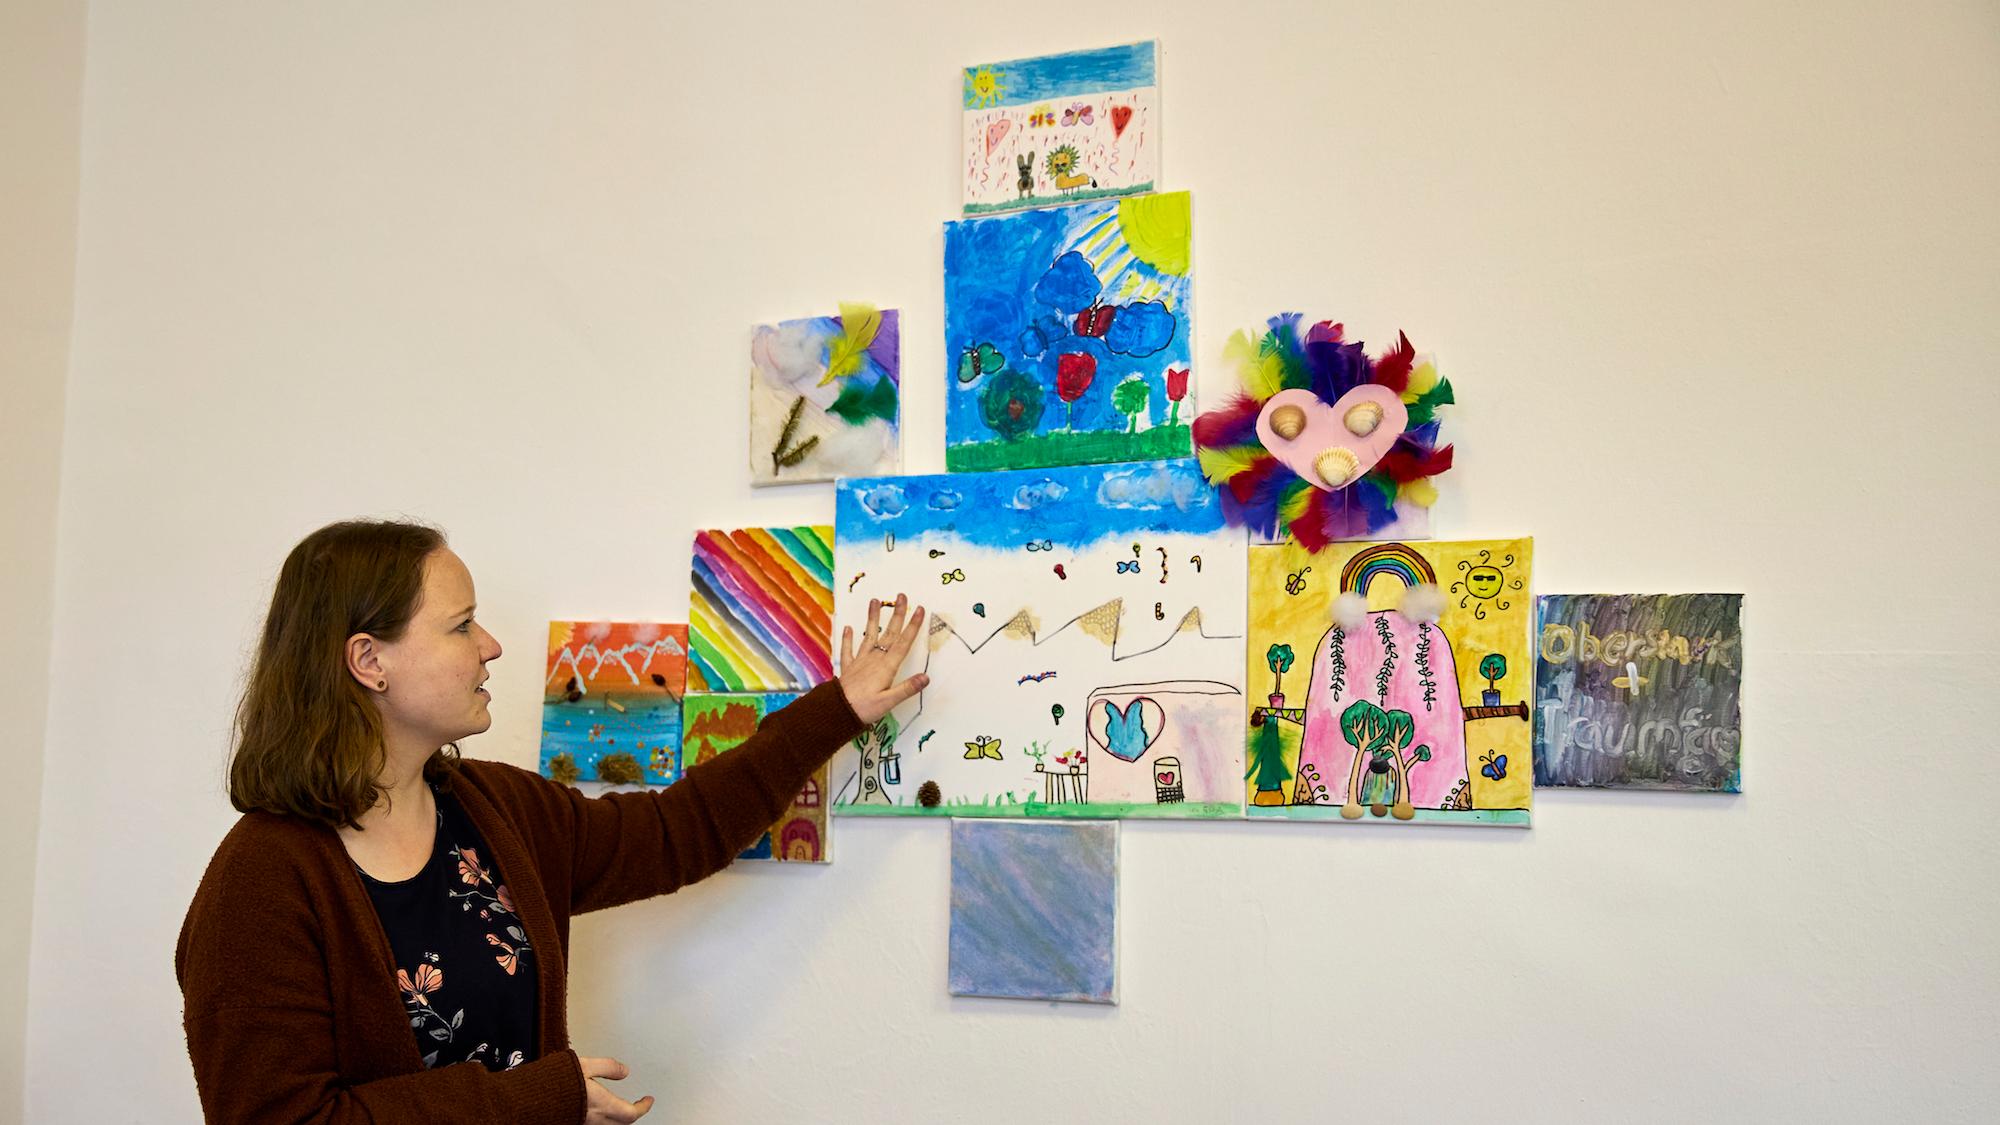 Ellen Sachsenmaier zeigt die Ergebnisse eines kunsttherapeutischen Angebots, bei dem die Kinder einen sicheren Ort malen sollten. An diesen Ort können sie sich gedanklich zurückziehen, wenn sie Stress oder Angst haben. (c) Caroline Schaefer/Caritas international